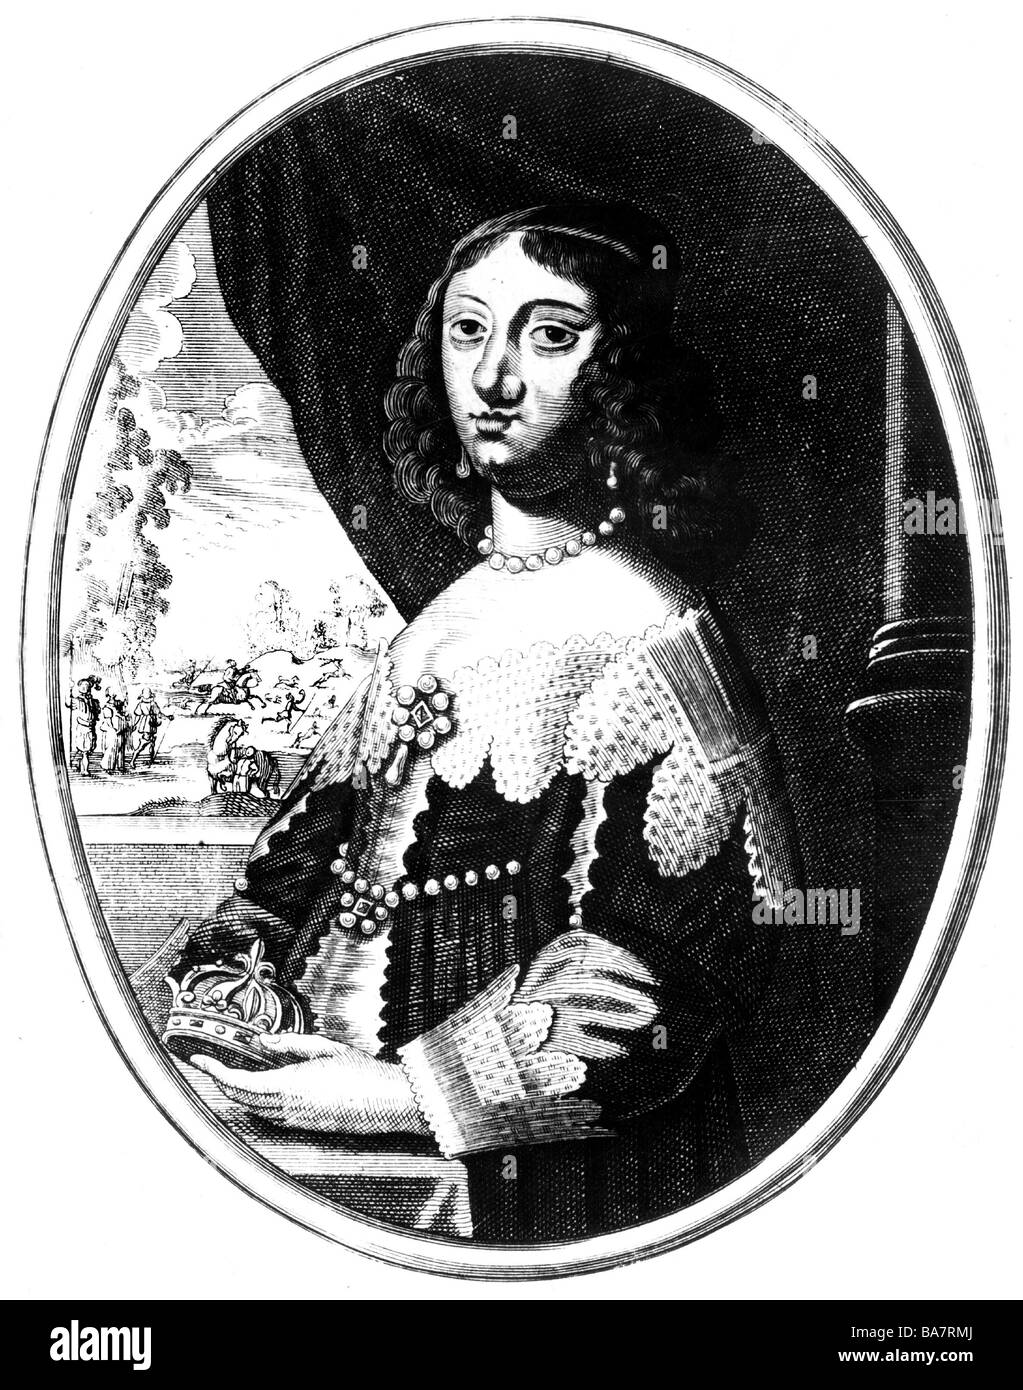 Anne d'Autriche, 22.9.1601 - 20.1.1666, reine de France depuis 1615, épouse de Louis XIII, gravure sur cuivre, contemporain de l'artiste n'a pas d'auteur pour être effacé Banque D'Images